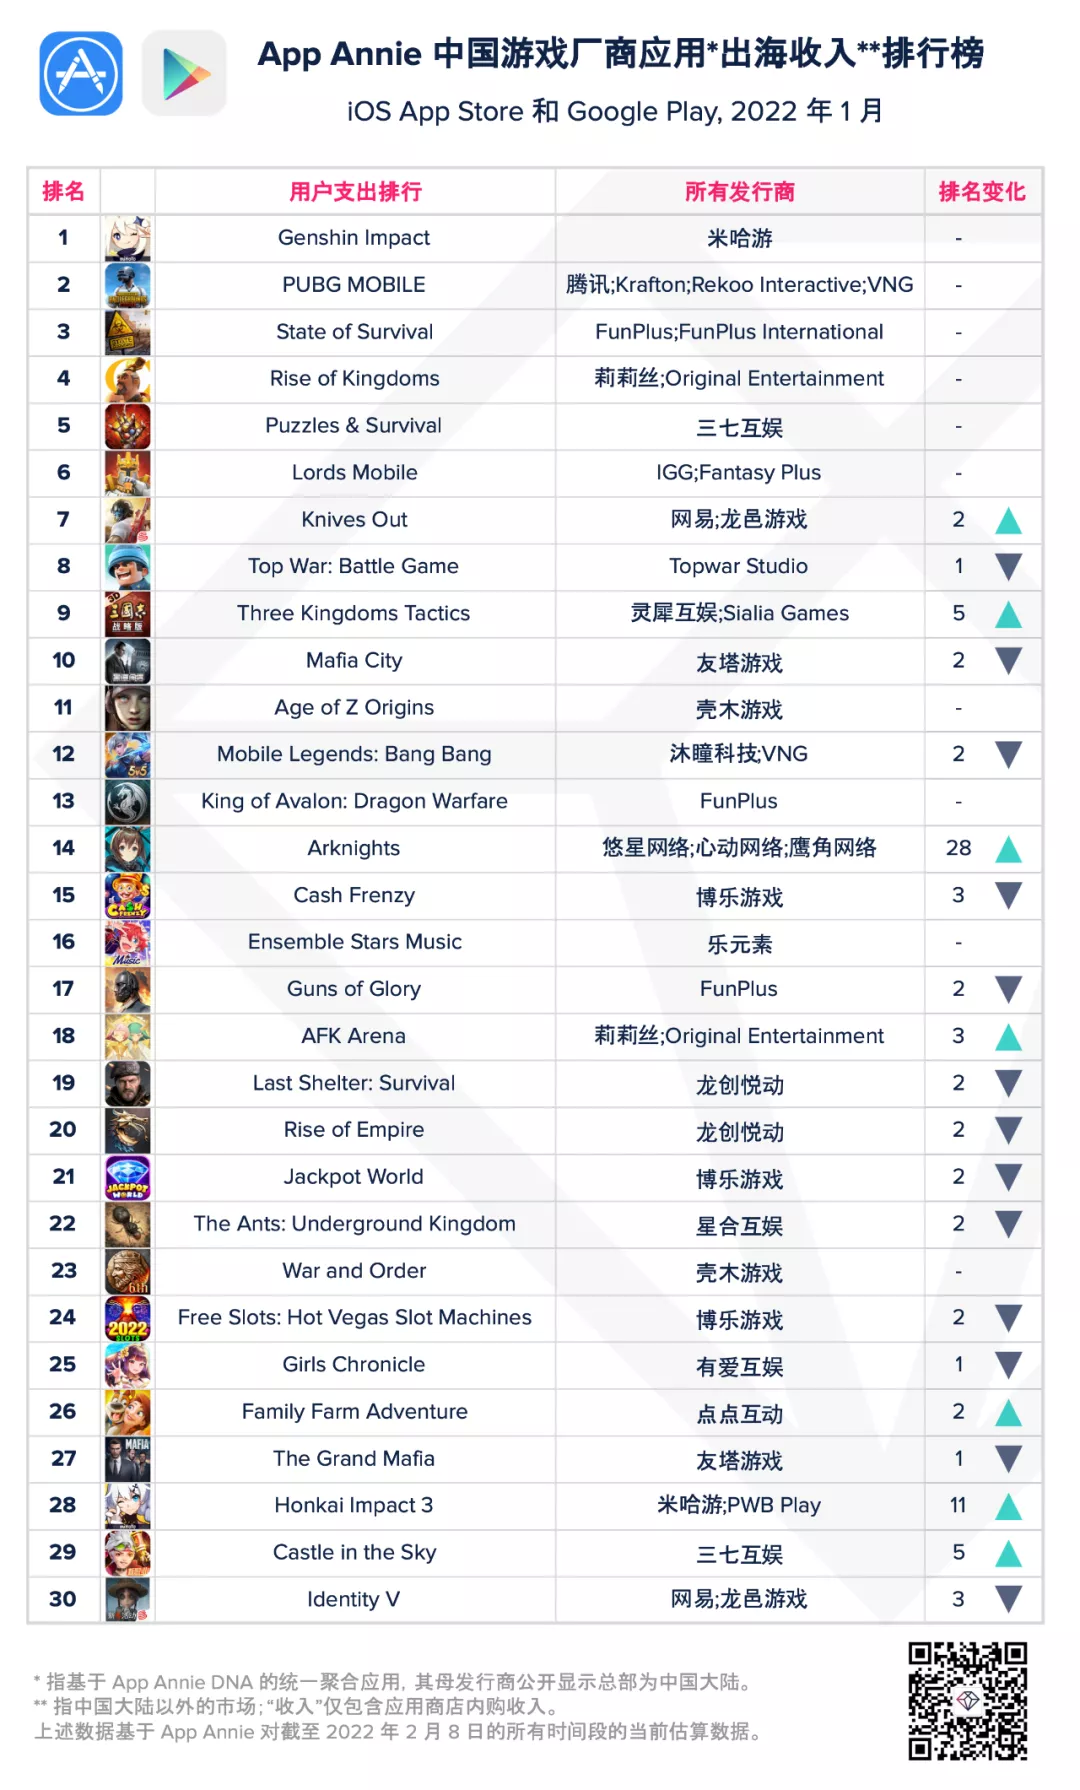 中国游戏收入排行榜_1月中国游戏厂商应用出海收入排行榜:《原神》第一,PUBG手游第二